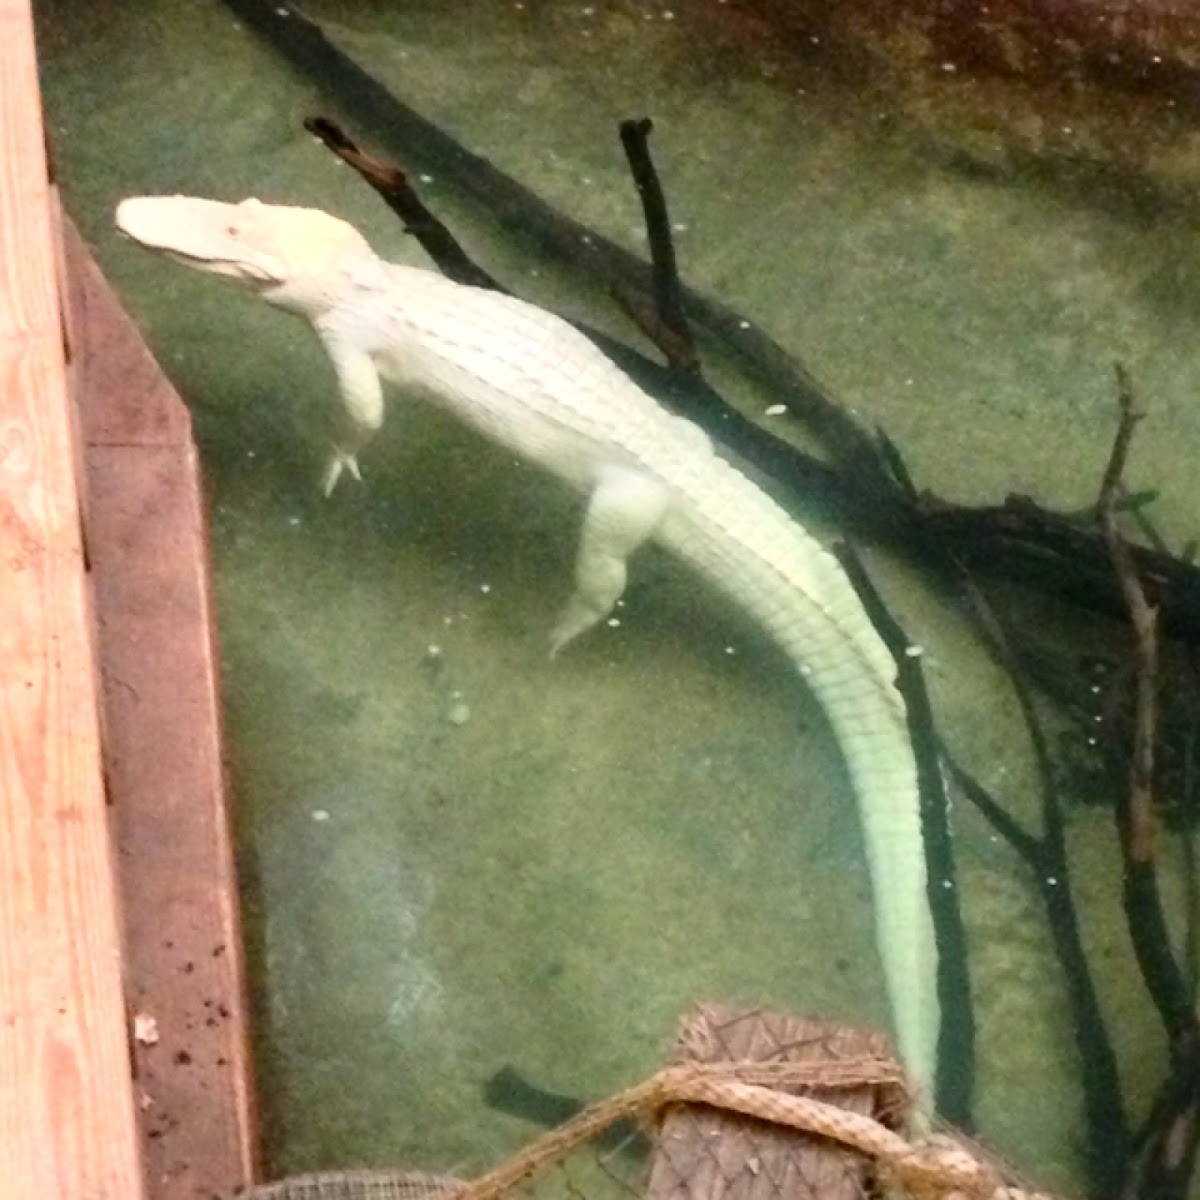 Albino American Alligator